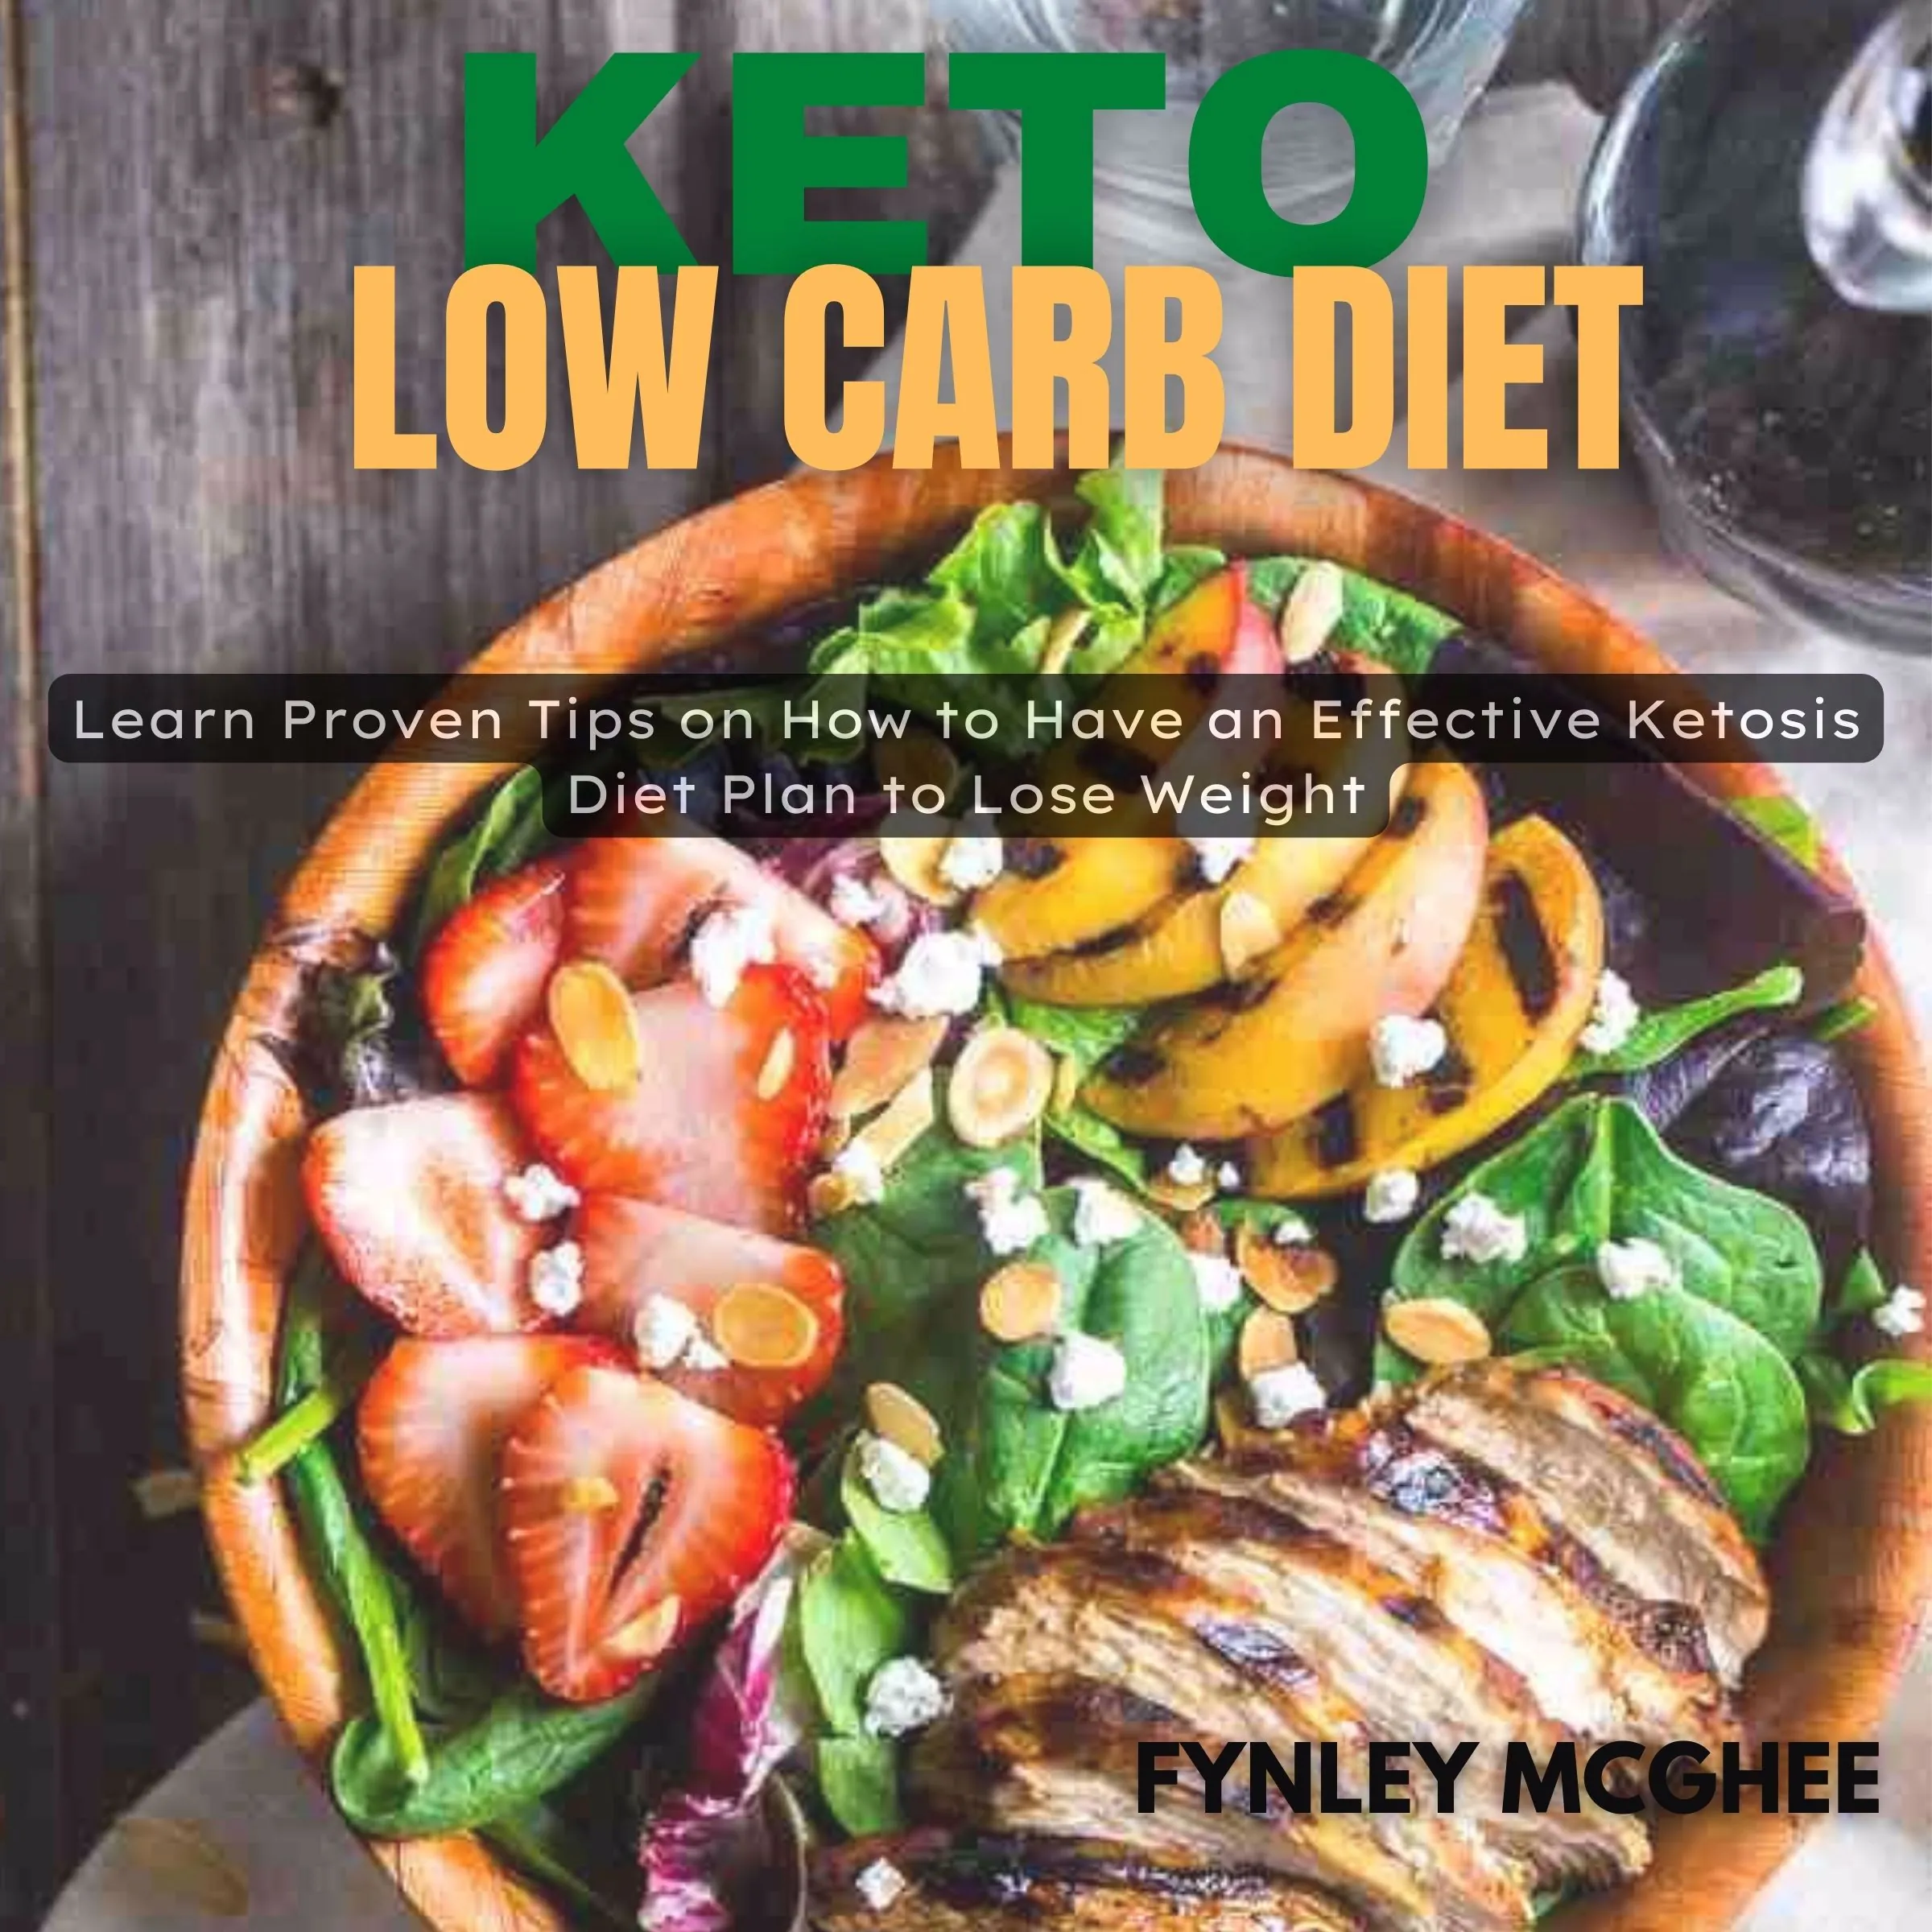 Keto Low Carb Diet Audiobook by Fynley Mcghee